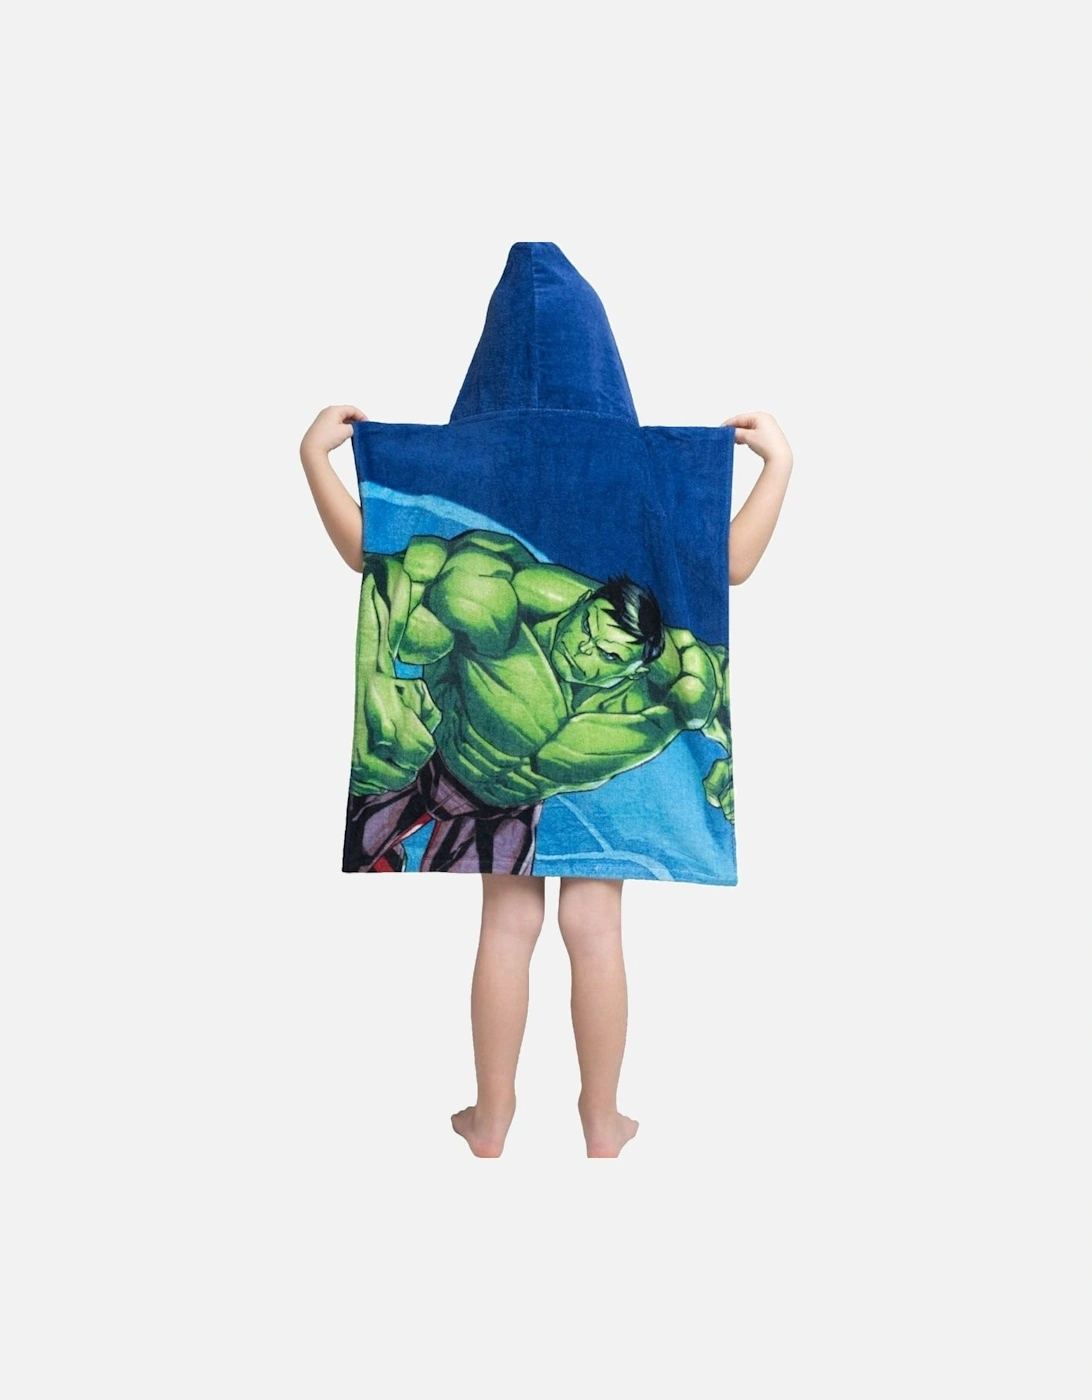 Avenger Childrens/Kids Superhero Hooded Towel